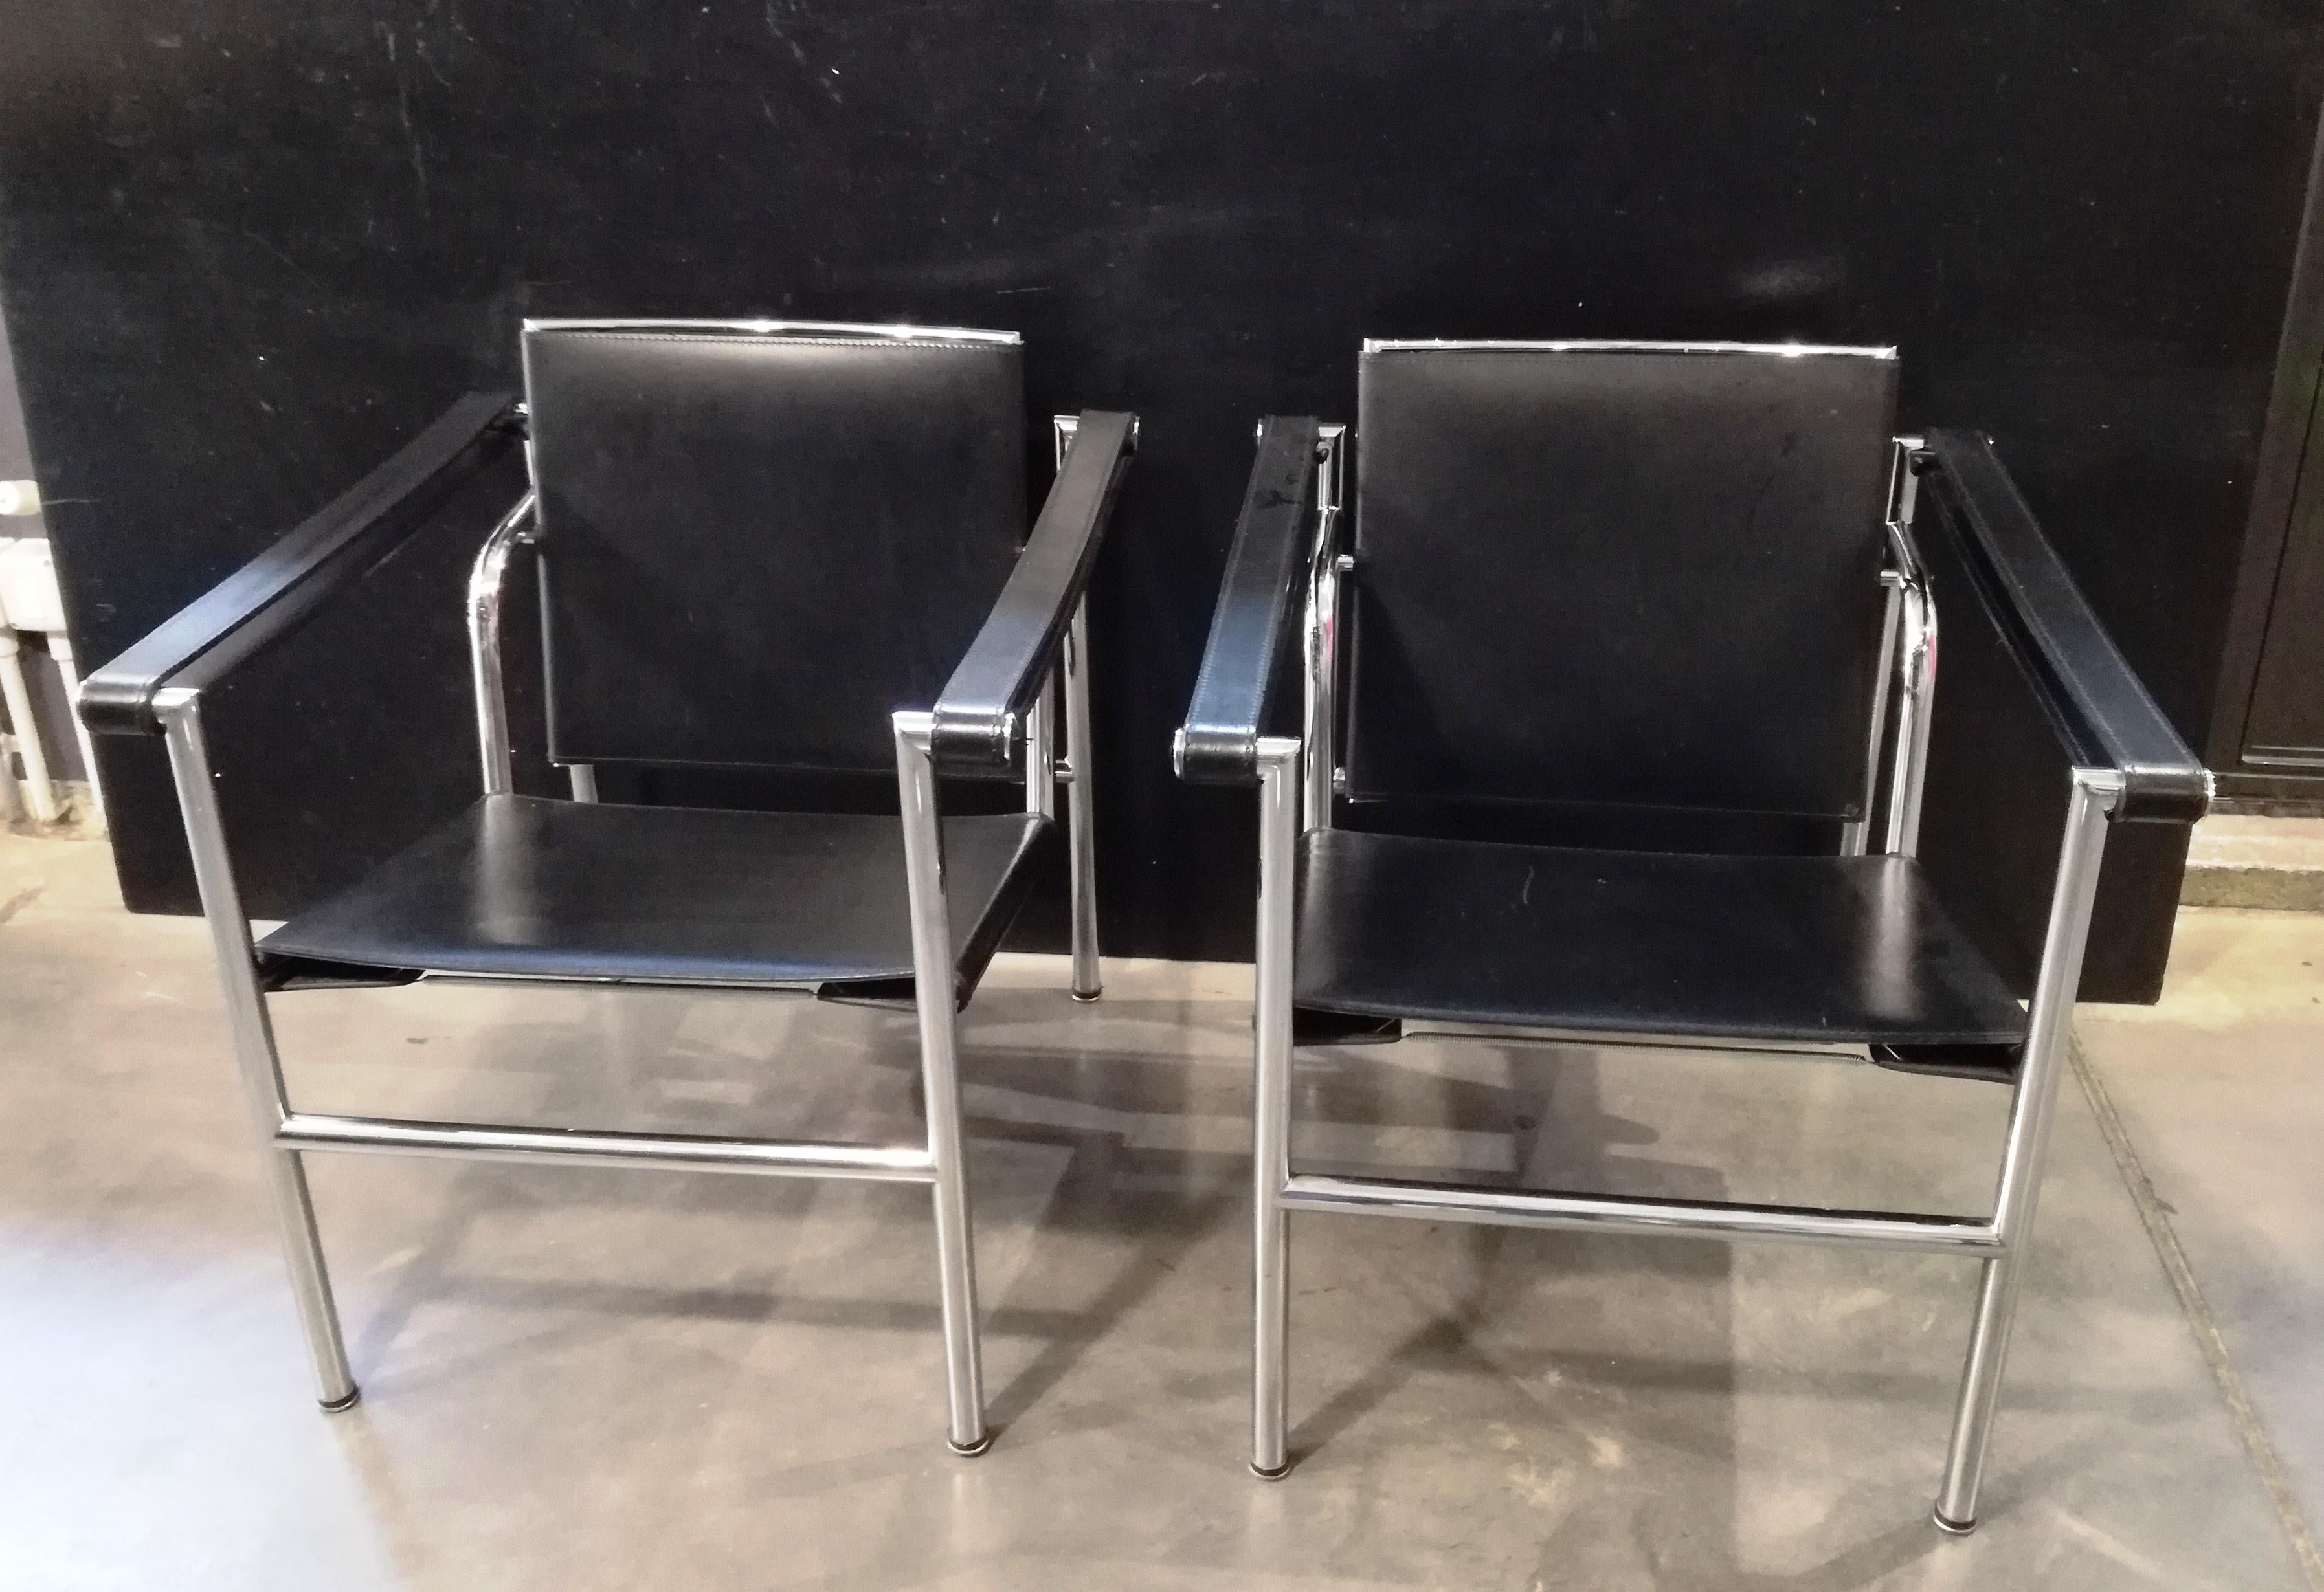 coppia di poltroncine di ispirazione Bauhaus, produzione Alivar, anni 90. usate ma in buono stato. h seduta cm 38 struttura in acciaio cromato, sedili in vero cuoio di qualita' italiana. non hanno difetti, presentano solo segni d'uso nel cuoio. il